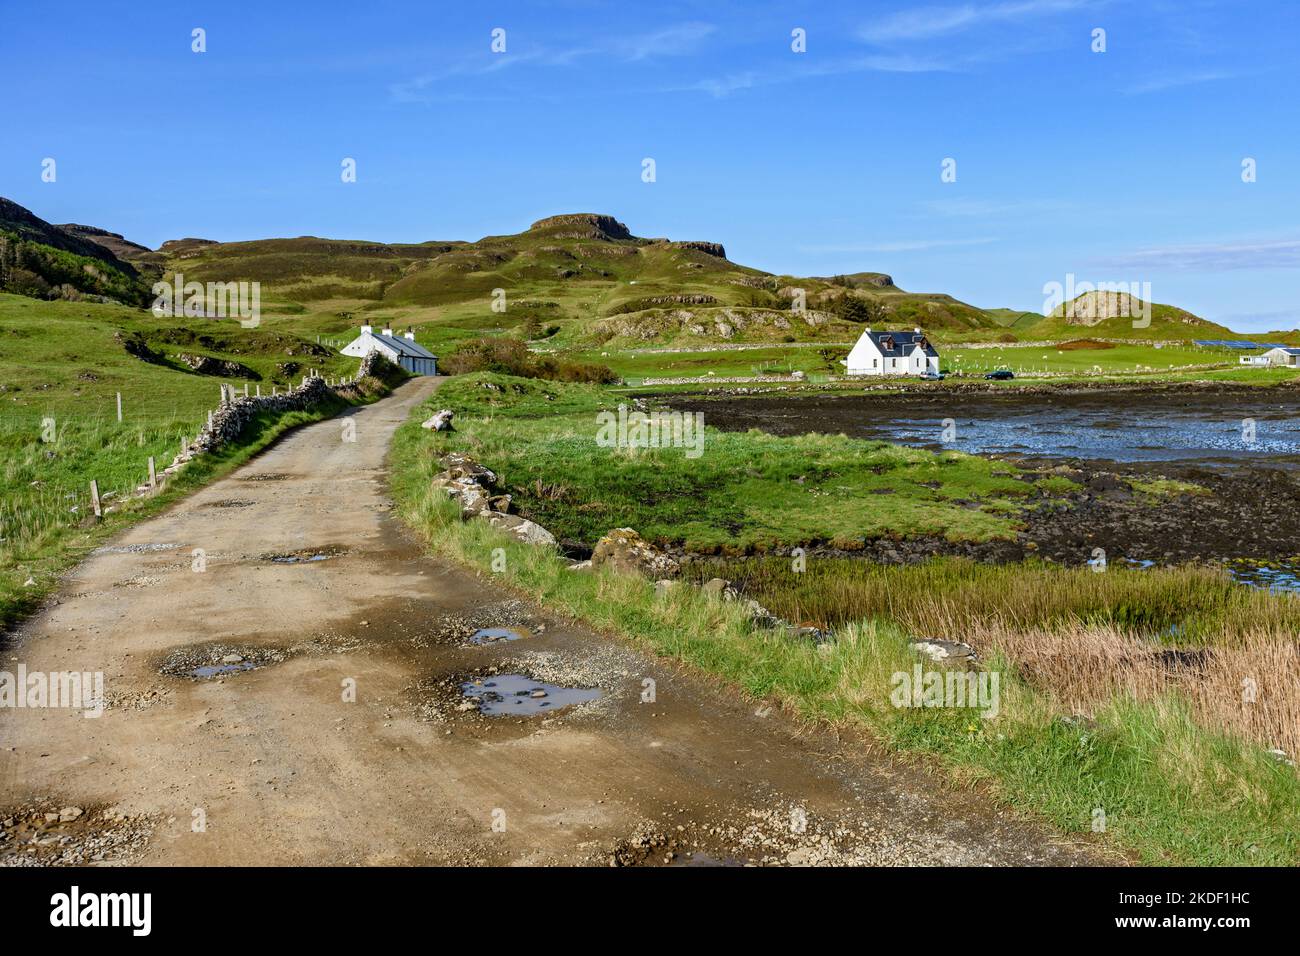 Compass Hill von der Strecke, die an der Siedlung A' Chill, Isle of Canna, Schottland, Großbritannien, vorbeiführt Stockfoto